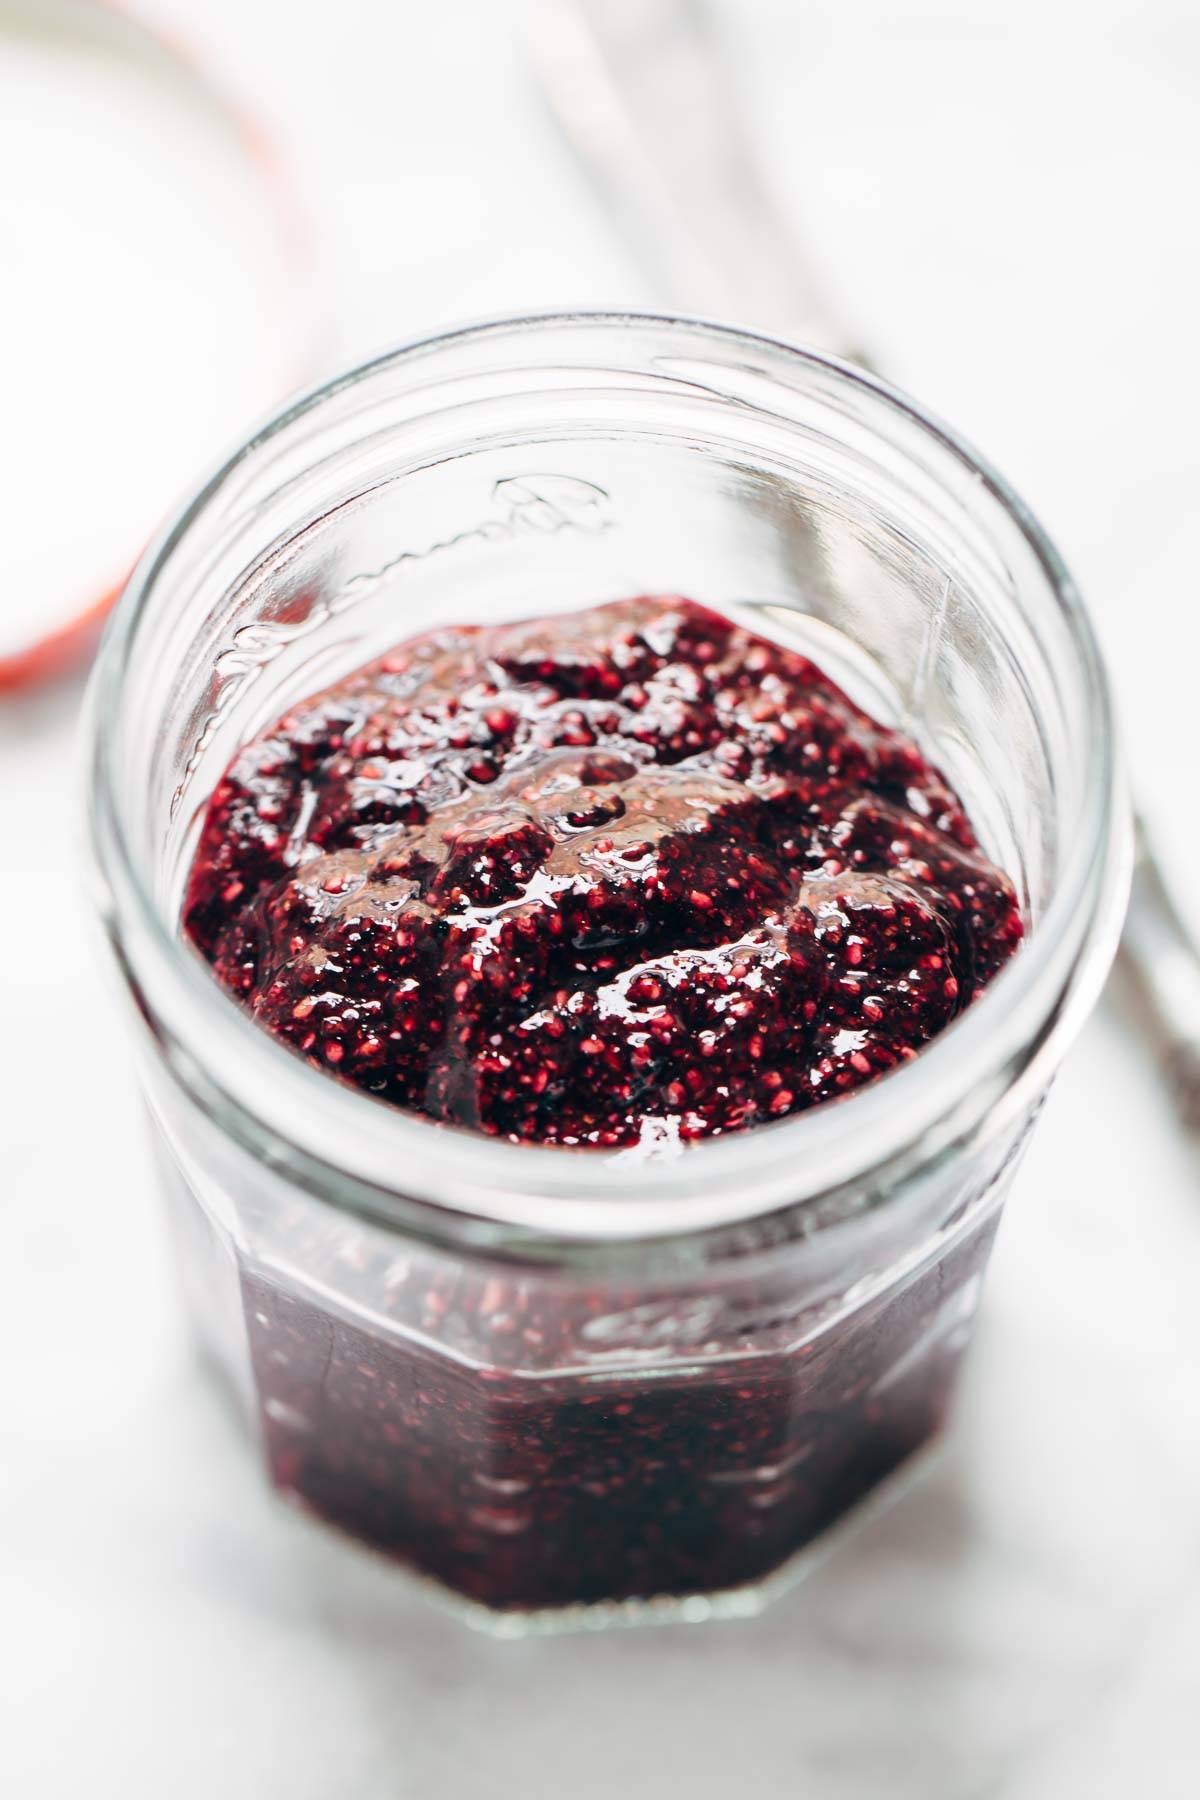 Berry jam in a jar.